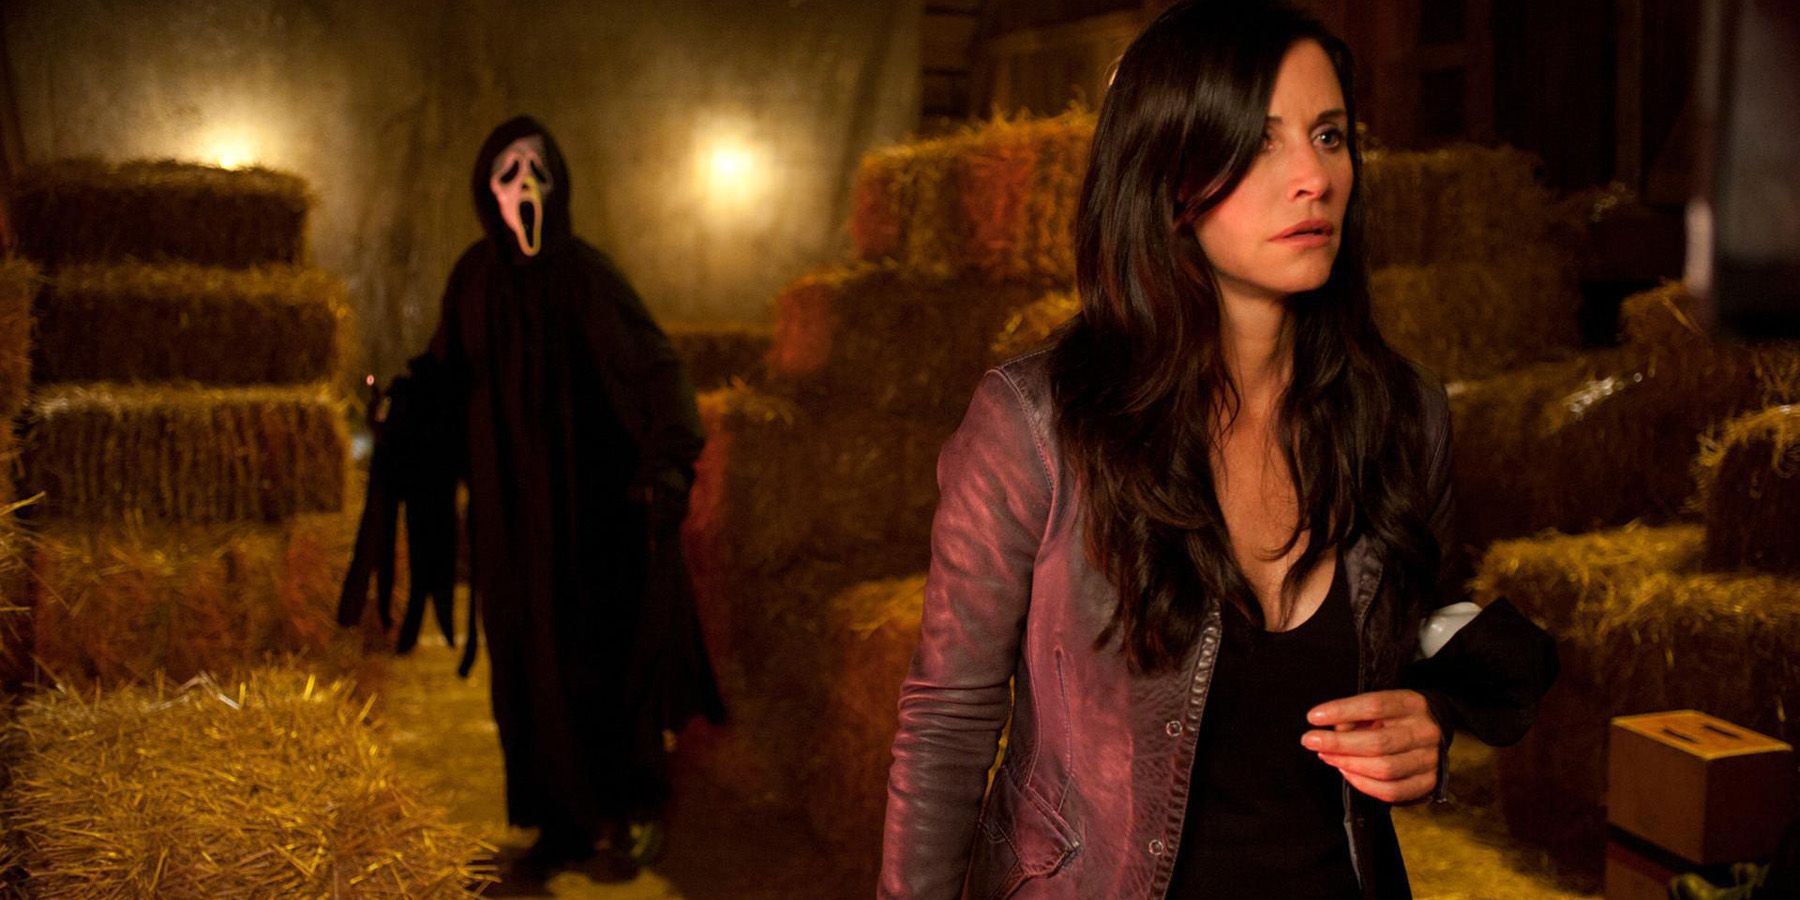 Ghostface hunts Gail in a barn in Scream 4